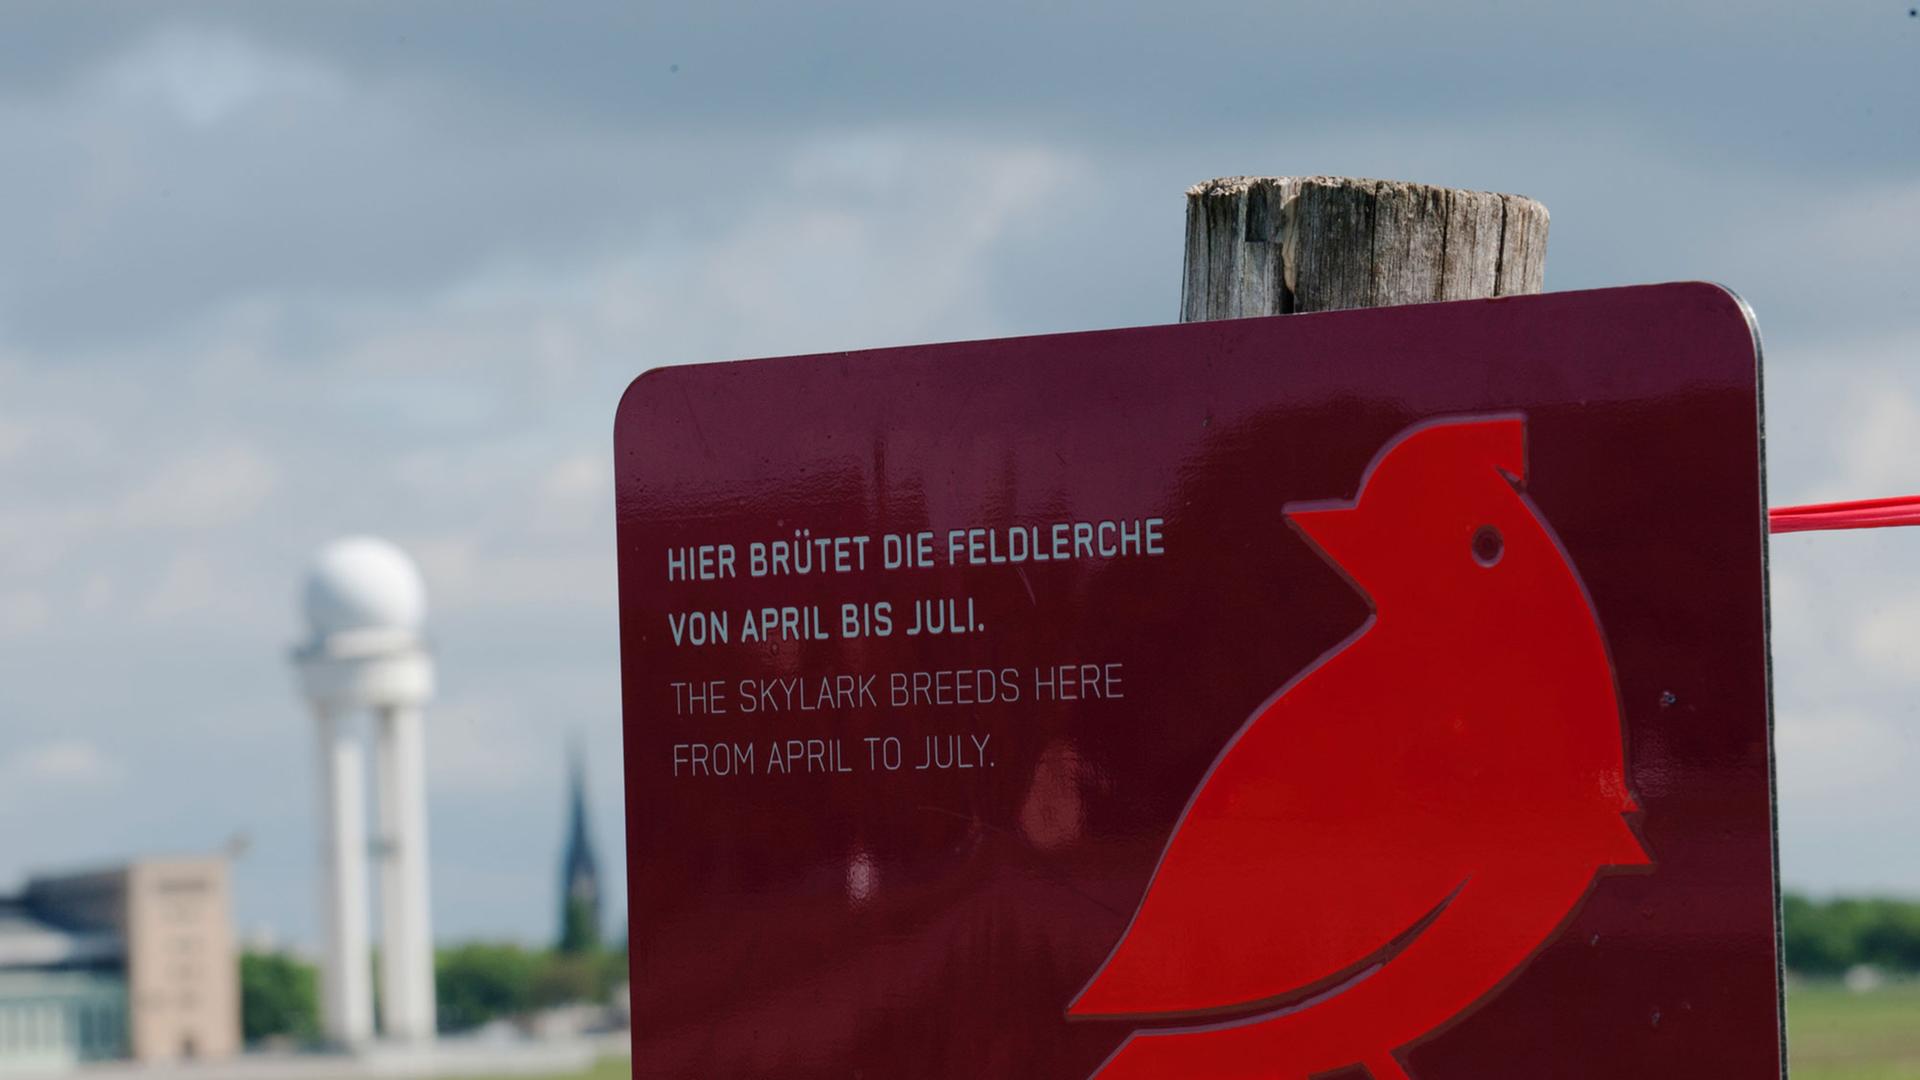 Das Schild "Hier brütet die Feldlerche von April bis Juli." steht am 13.05.2014 in Berlin auf dem Tempelhofer Feld.